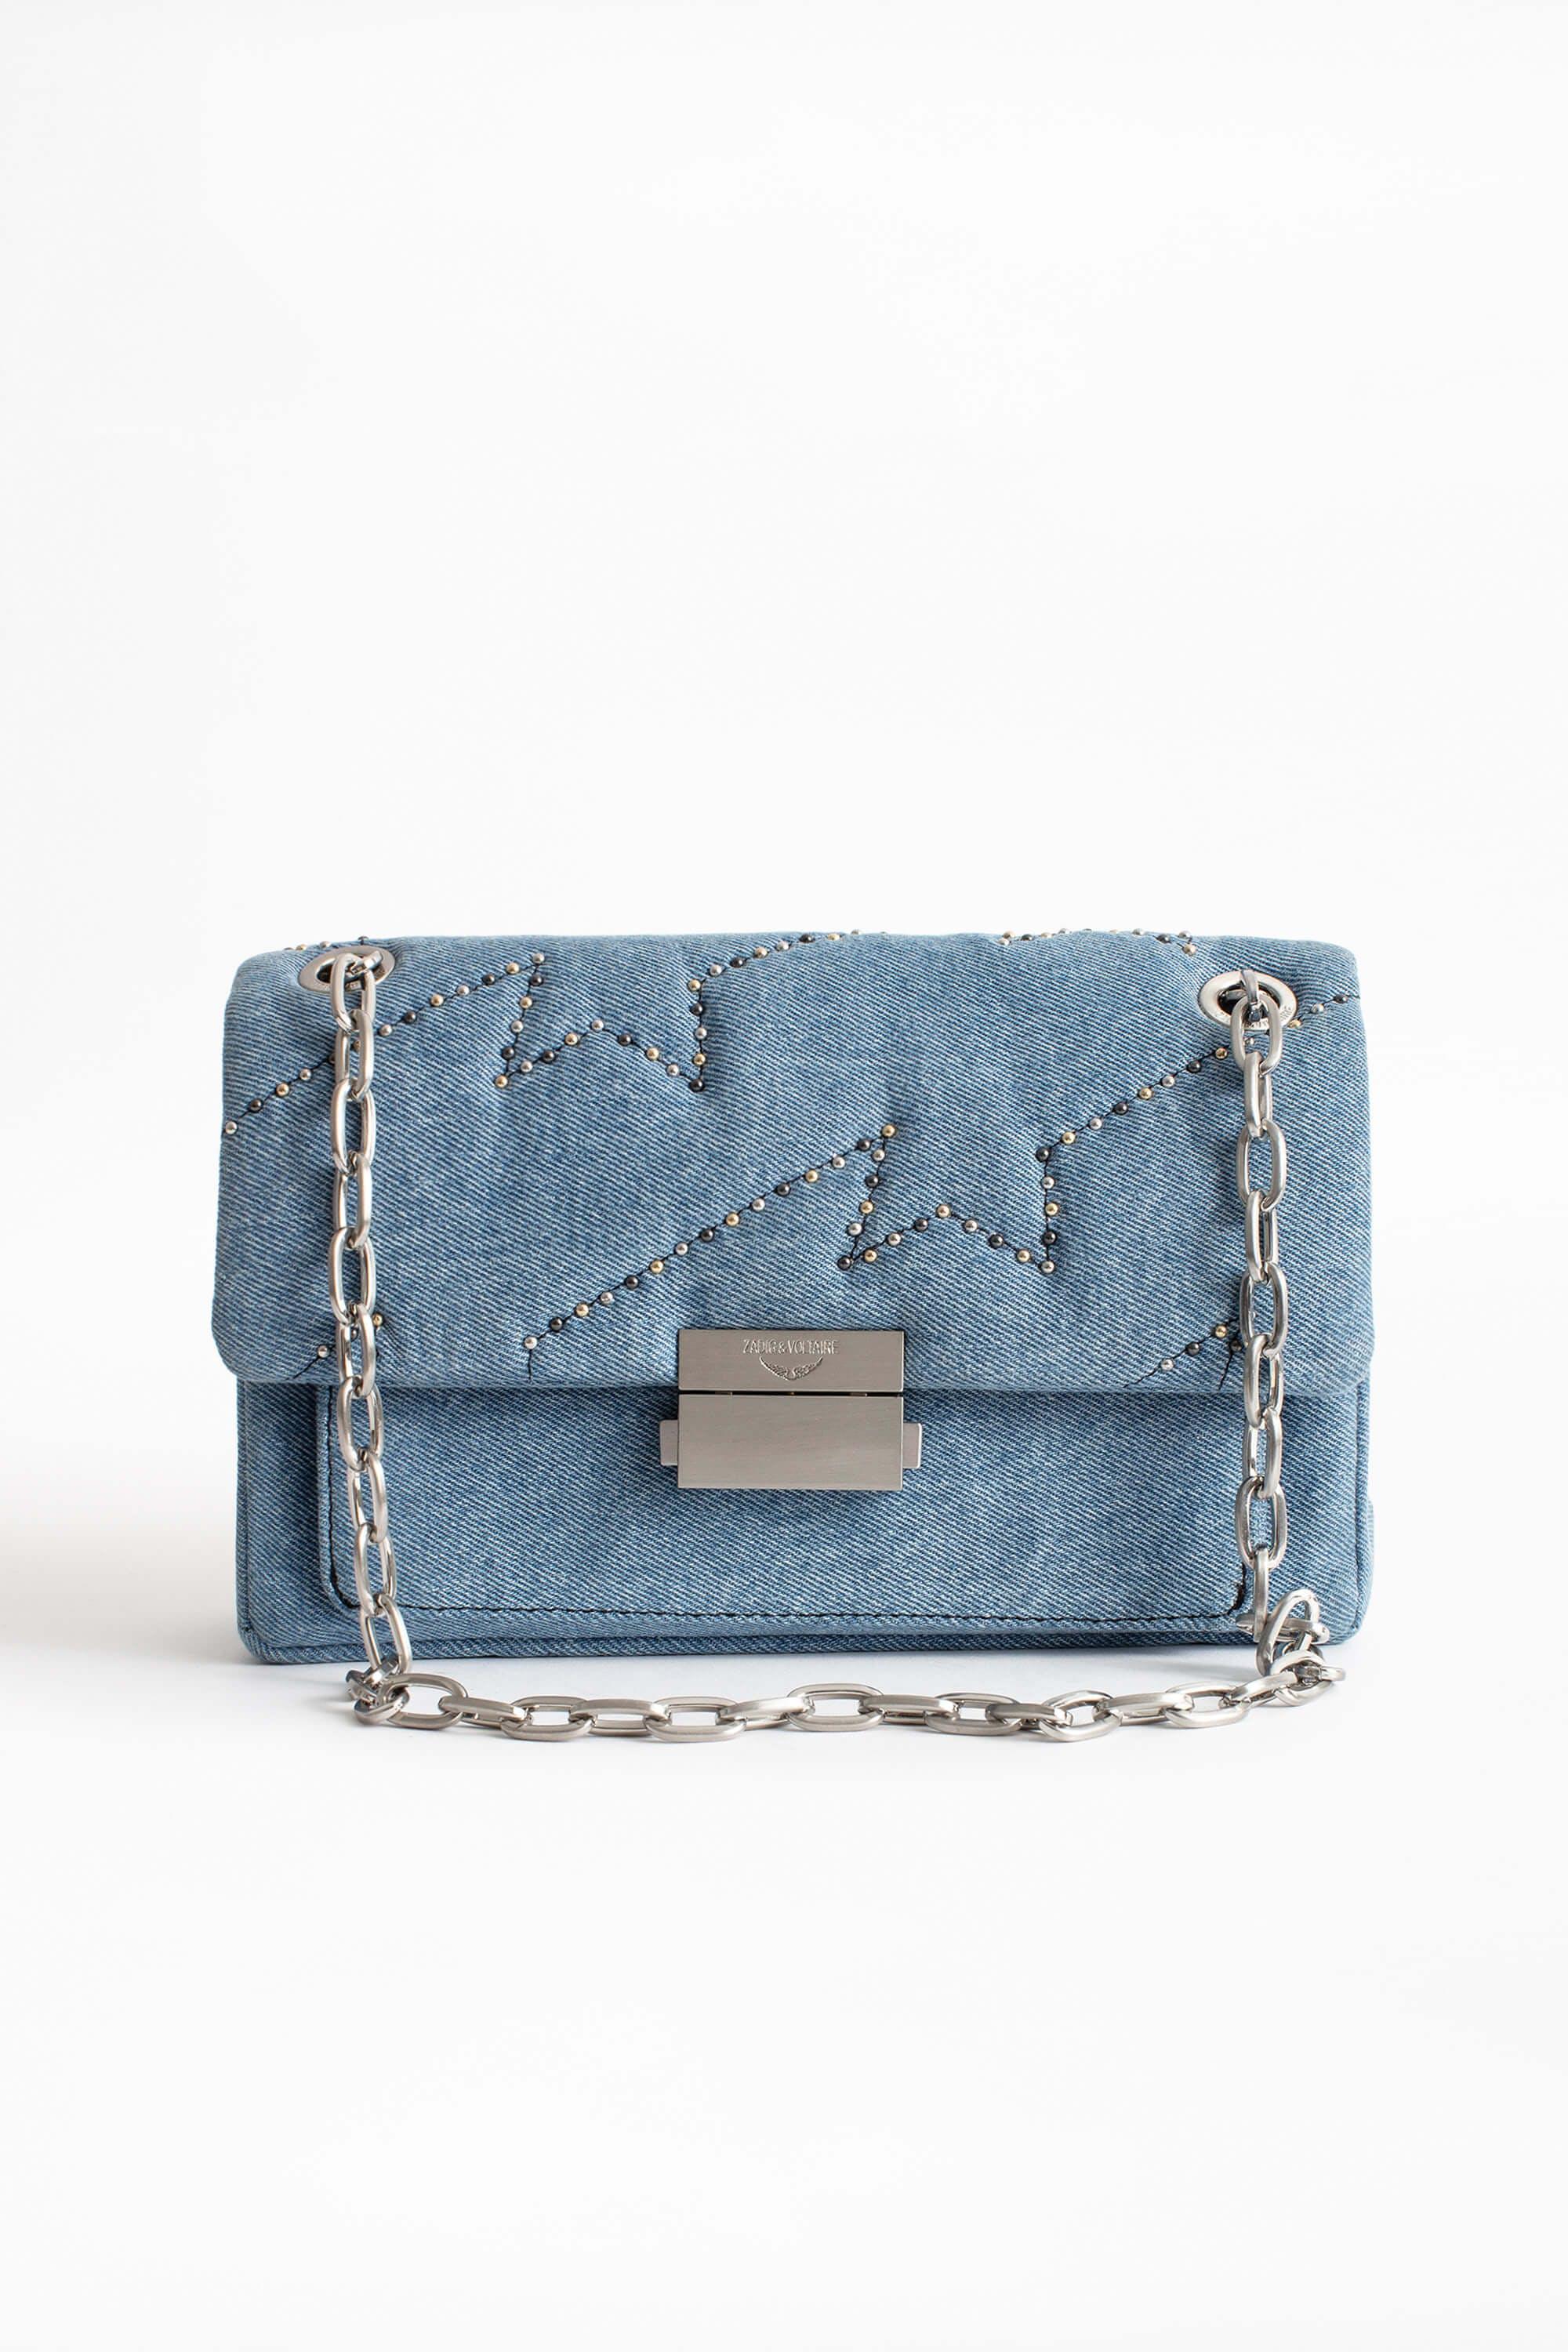 Zadig & Voltaire ziggy Denim Bag in Blue - Lyst